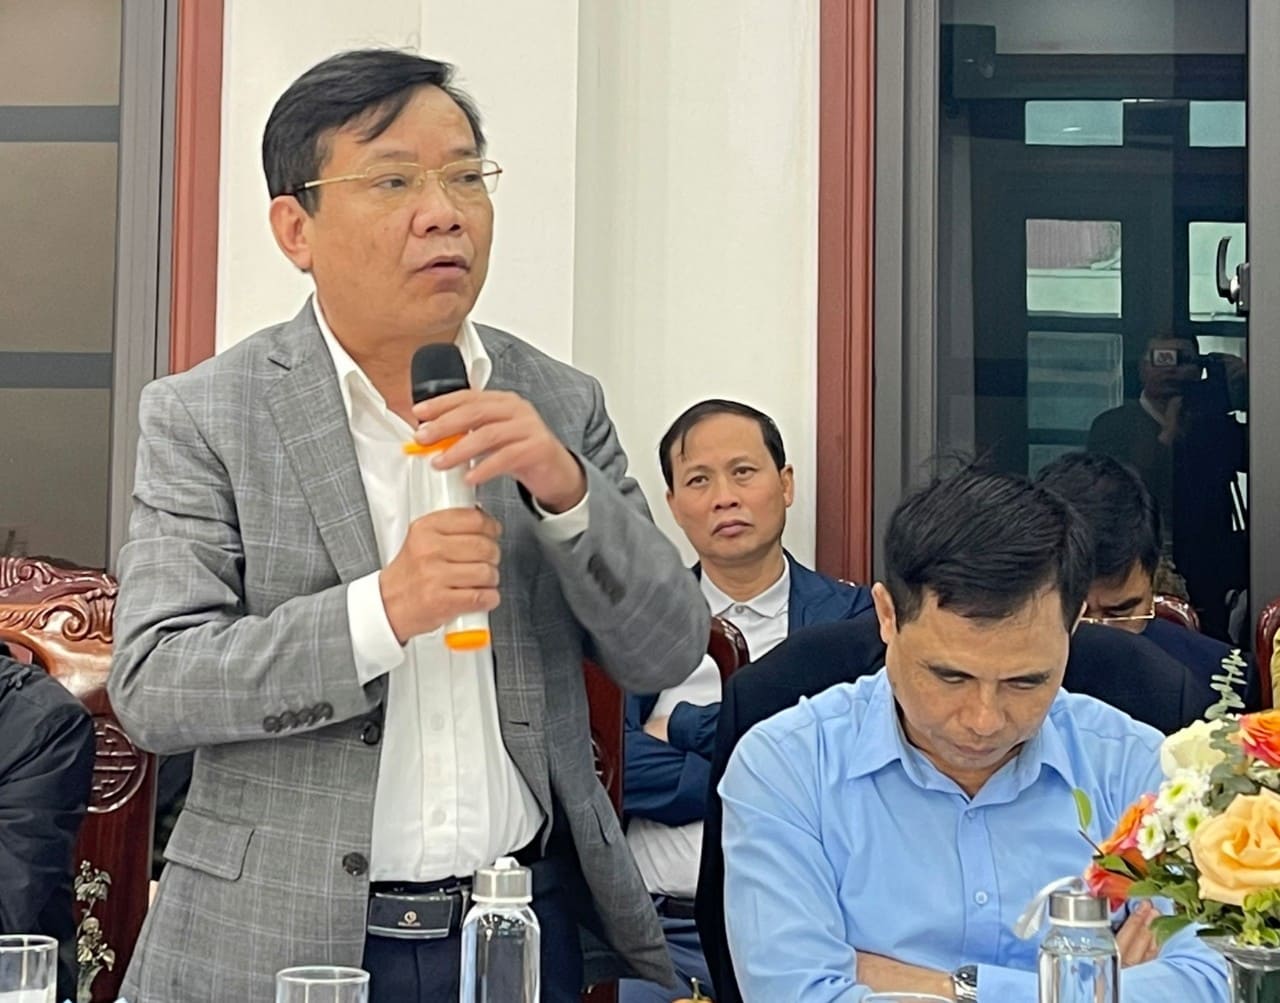 Ông Phạm Thái Hòa, Giám đốc Bệnh viện Đa khoa huyện Nho Quan trả lời câu hỏi của PV Lao Động tại buổi họp báo sáng nay (15.1). Ảnh: Nguyễn Trường